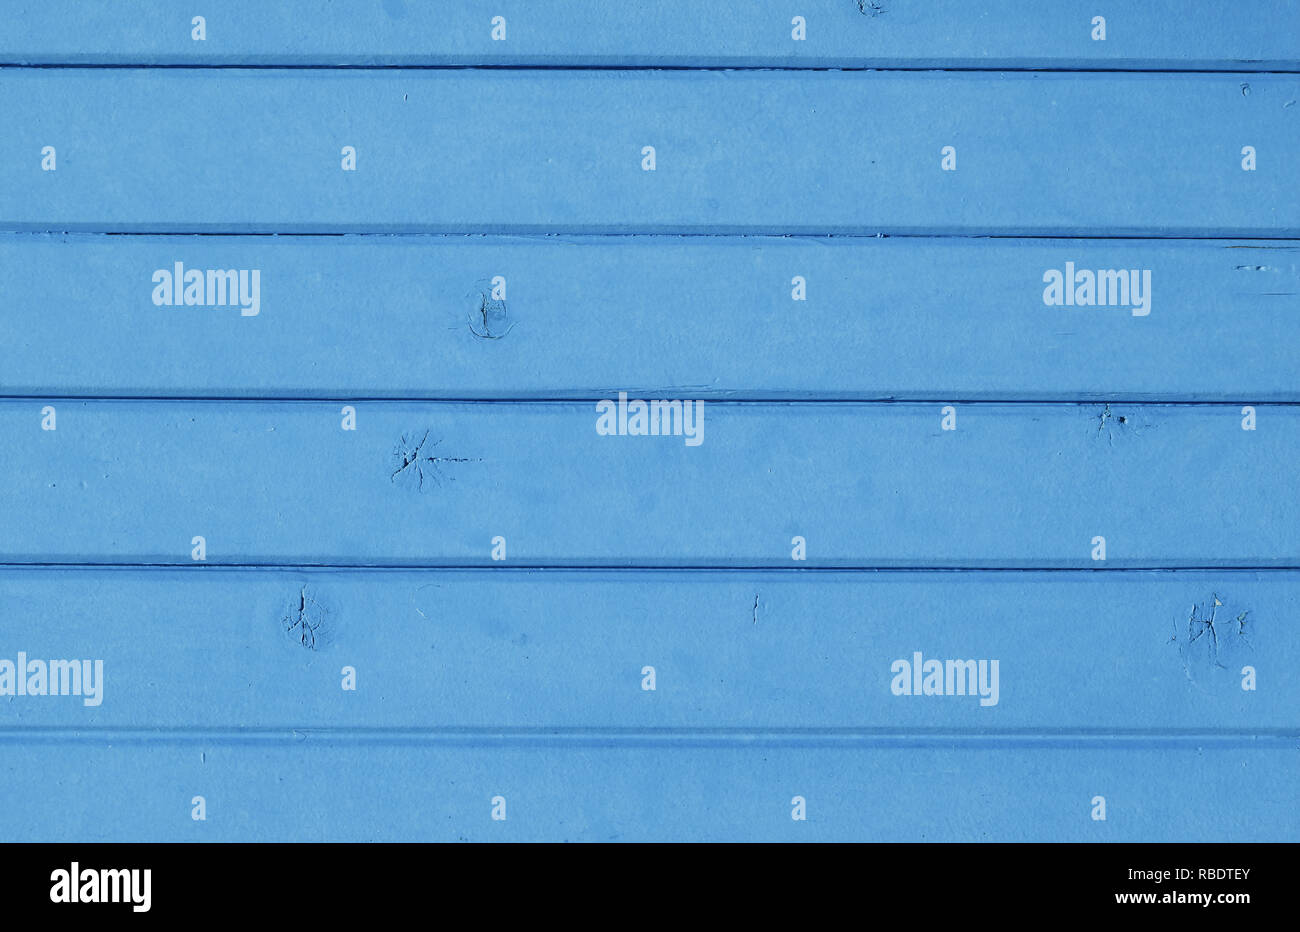 Nahaufnahme Hintergrund Textur von Blue vintage Holzbohlen, rustikalen Stil wall Panel gemalt Stockfoto